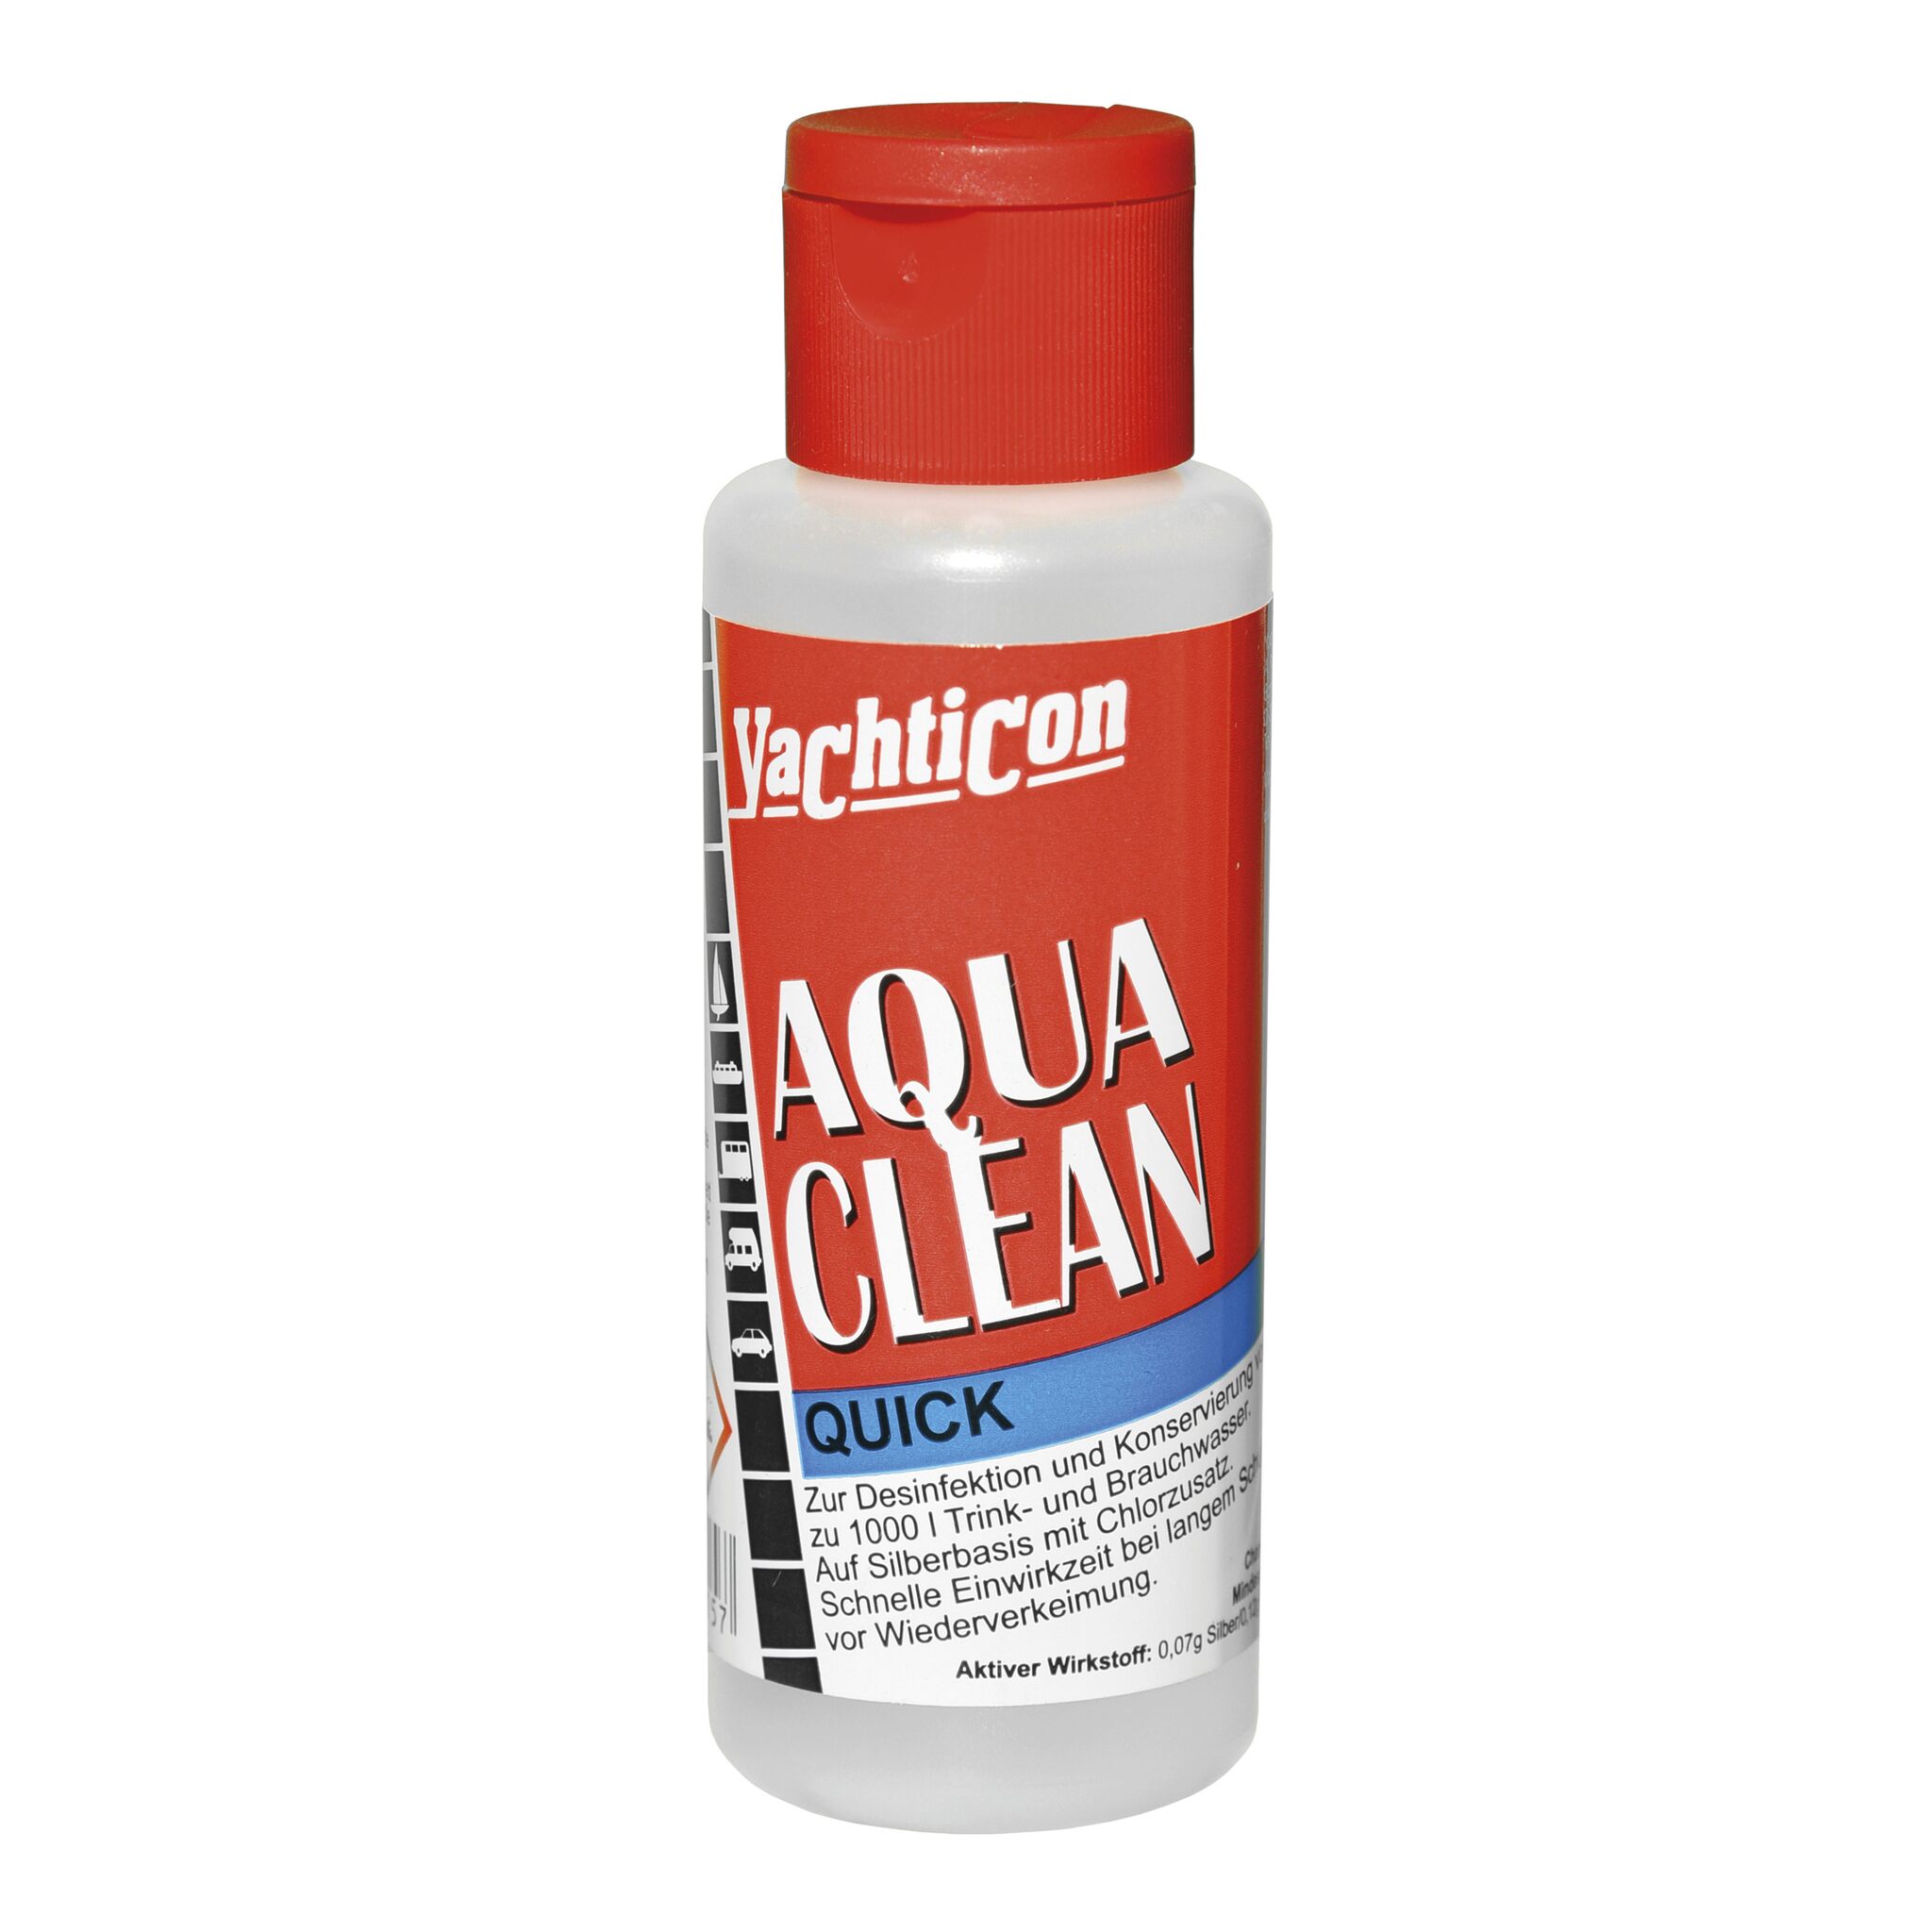 Yachticon Aqua Clean Quick liquid